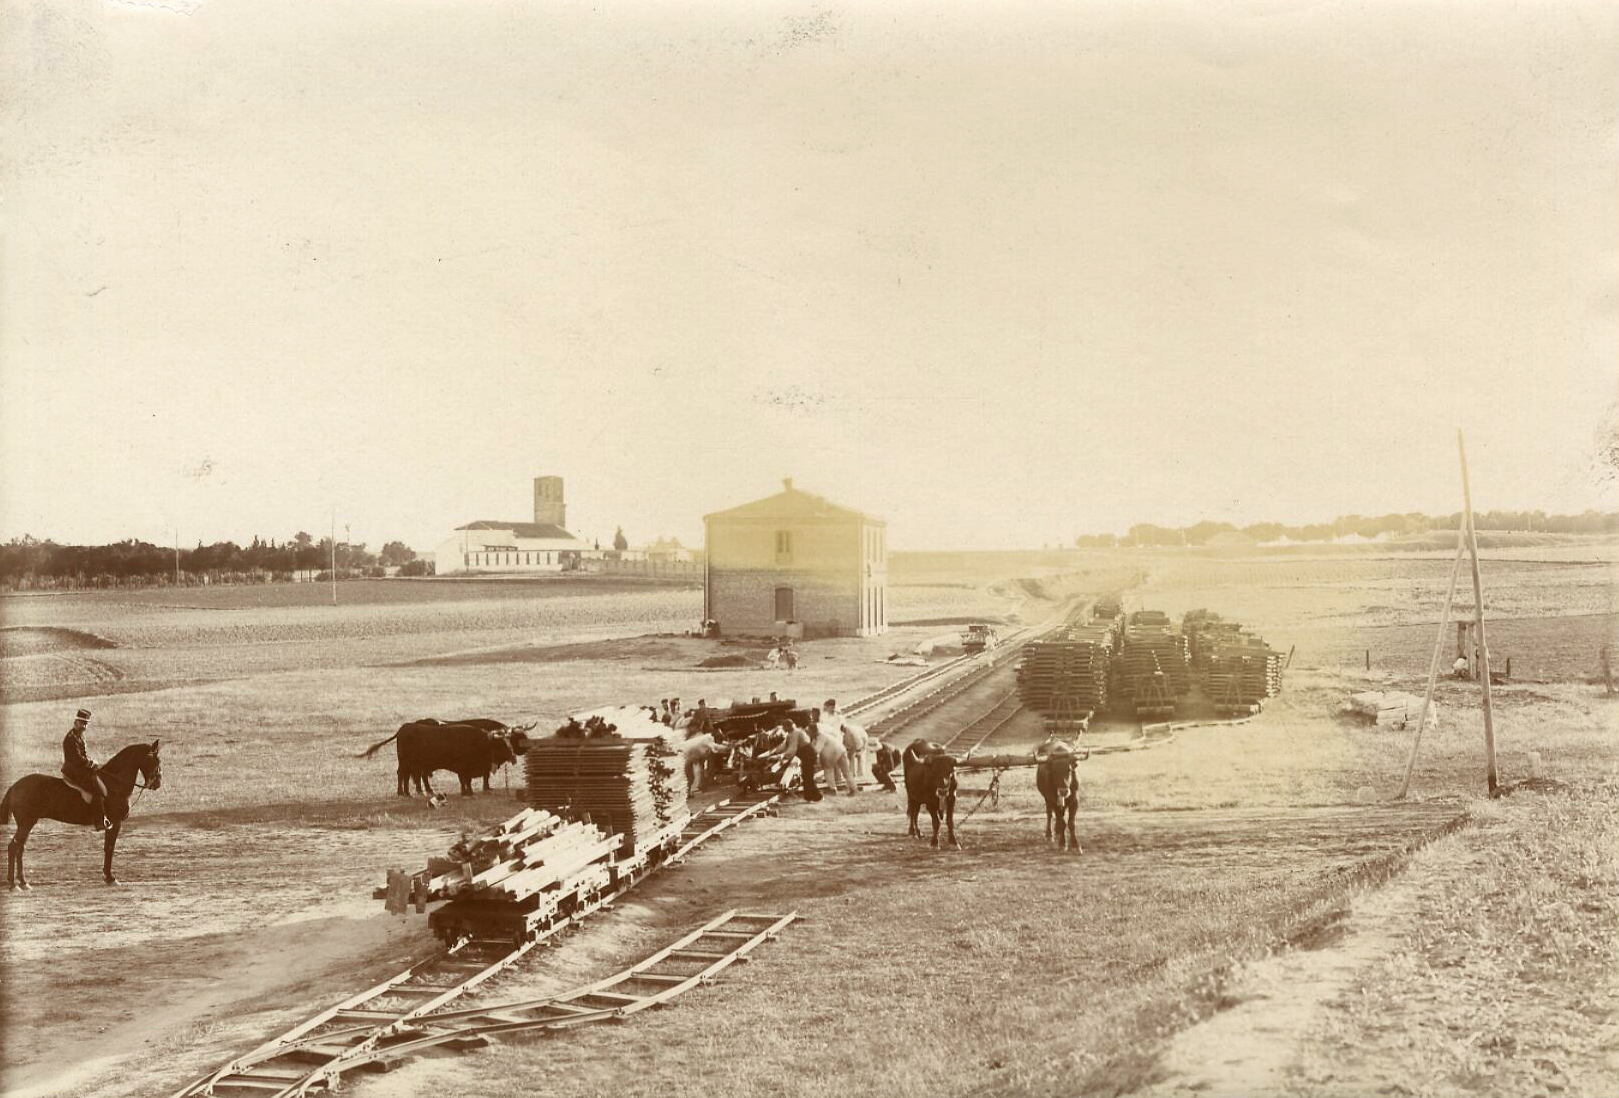 Ingenieros construyendo vías férreas. 1900